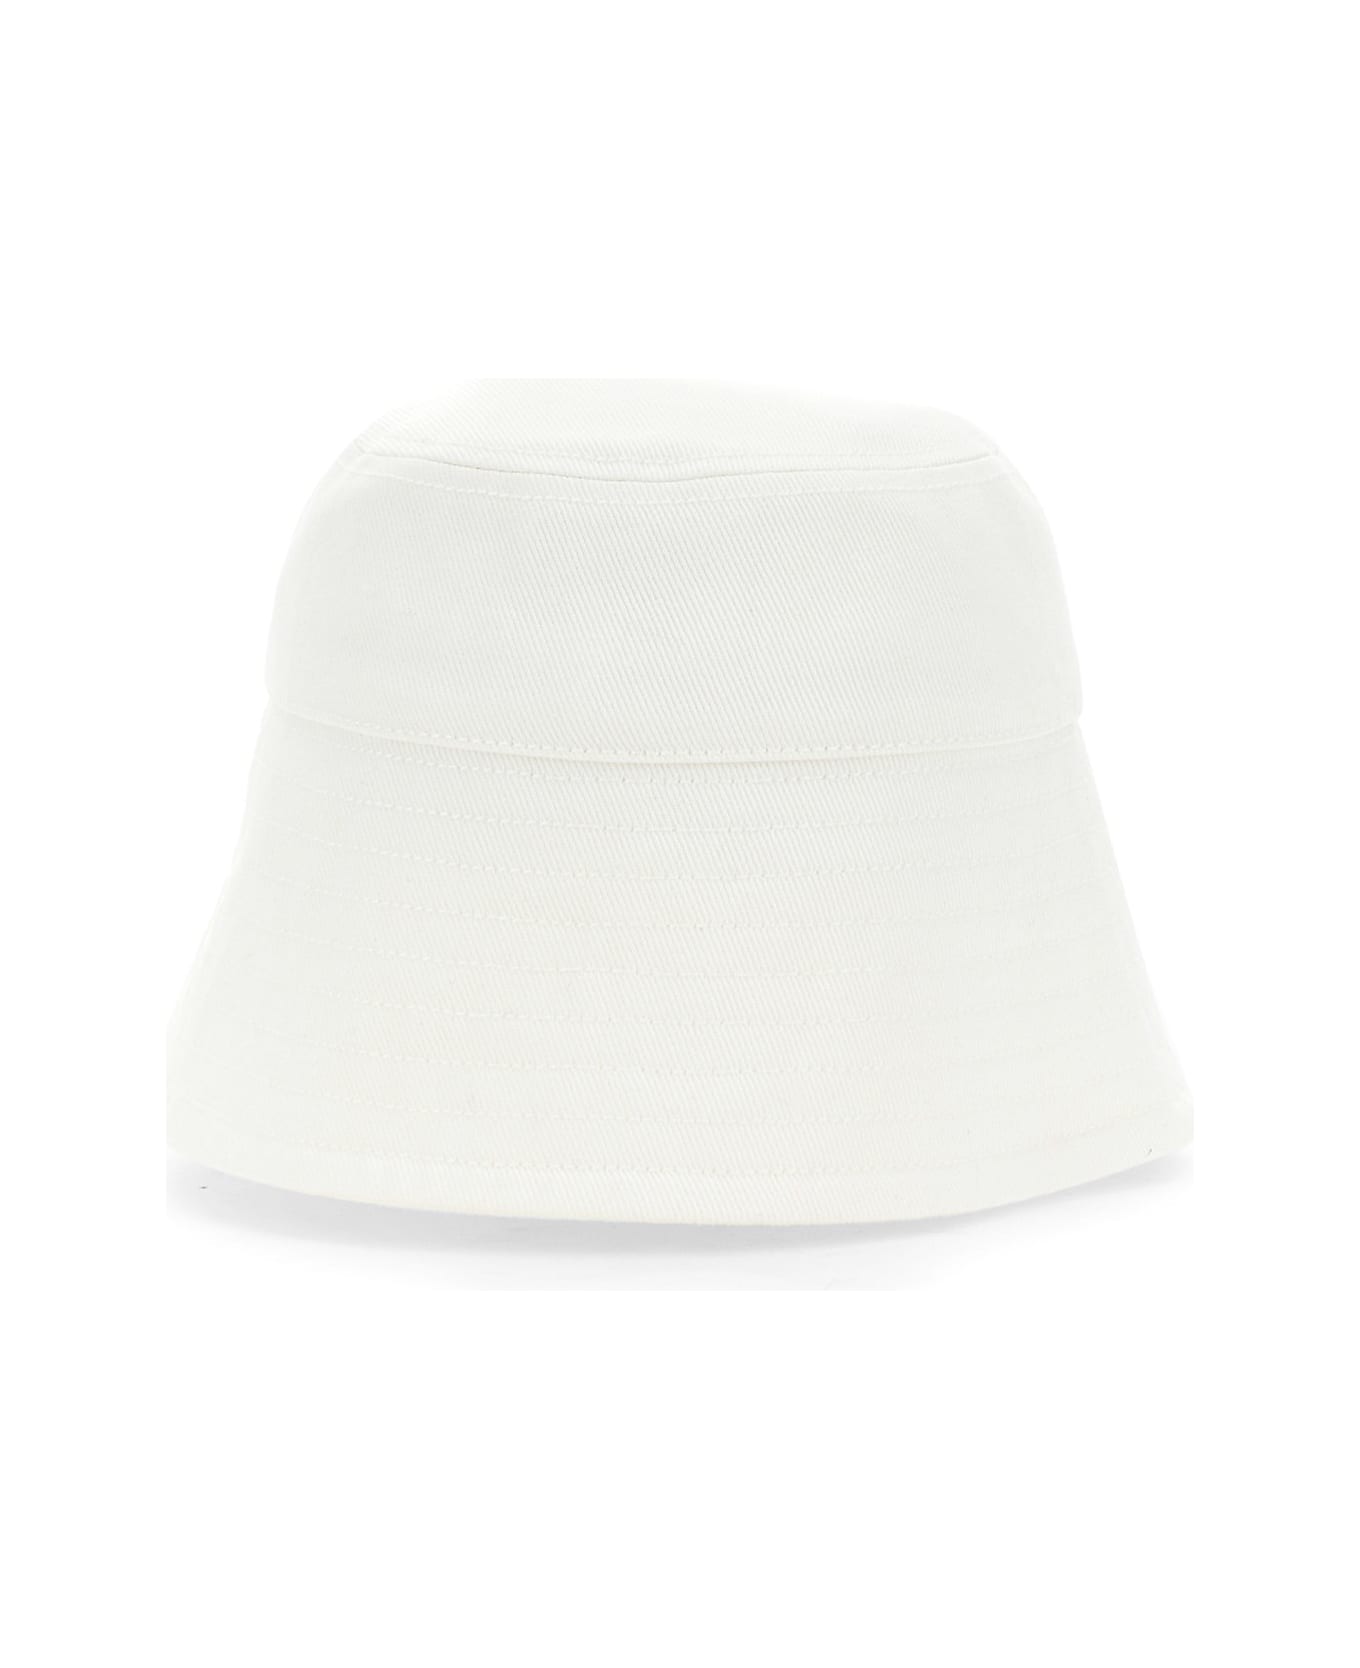 Patou Bucket Hat - 001W